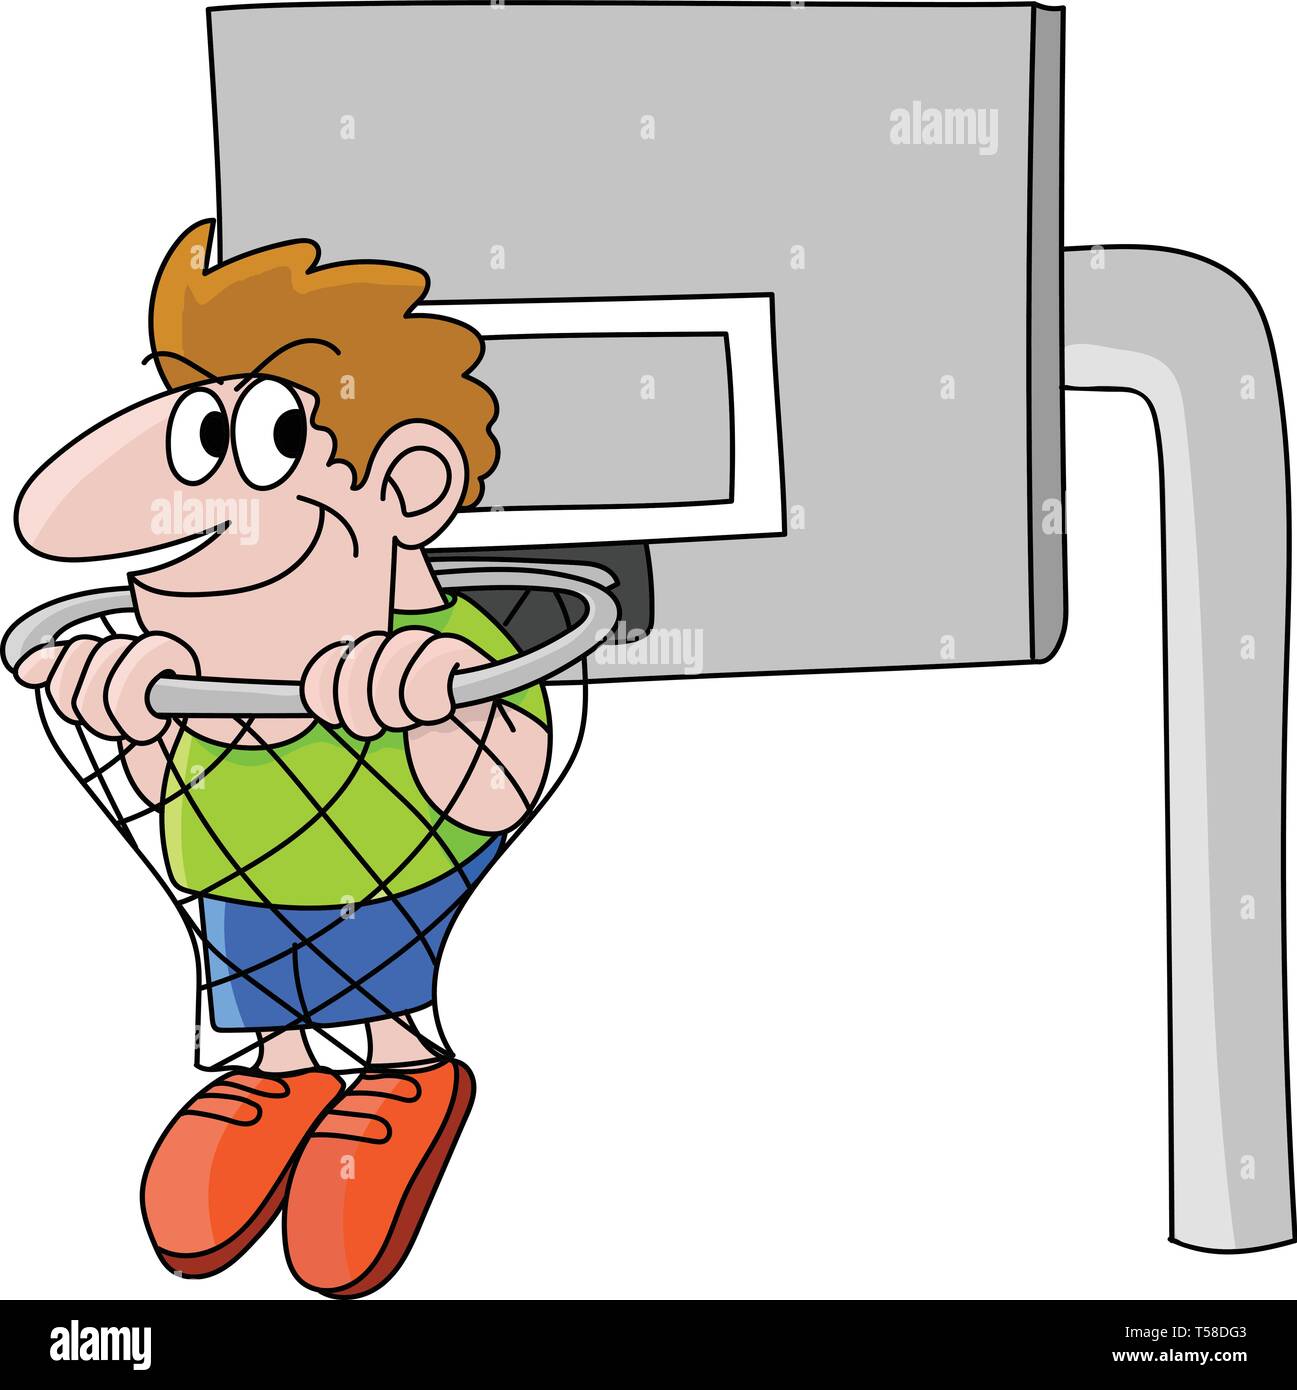 Fan de basket Cartoon homme assis à l'intérieur d'un panier de basket-ball vector illustration Illustration de Vecteur